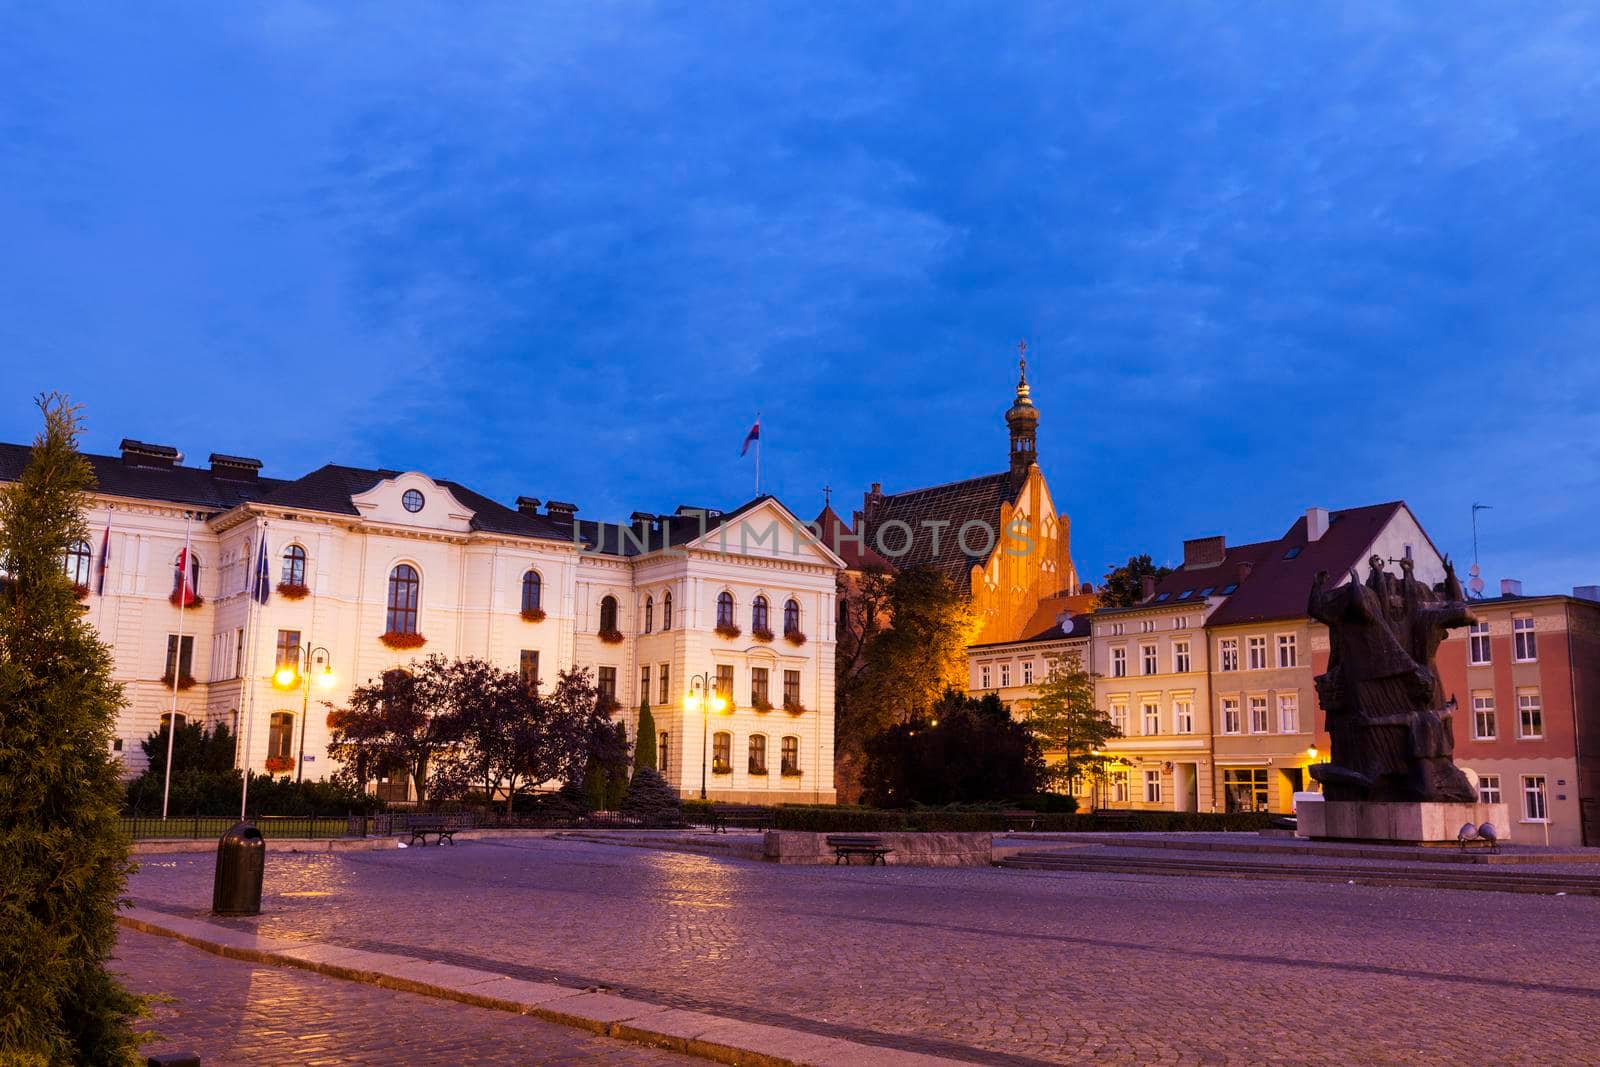 Old town square and City Hall in Bydgoszcz. Bydgoszcz, Kuyavian-Pomeranian, Poland.